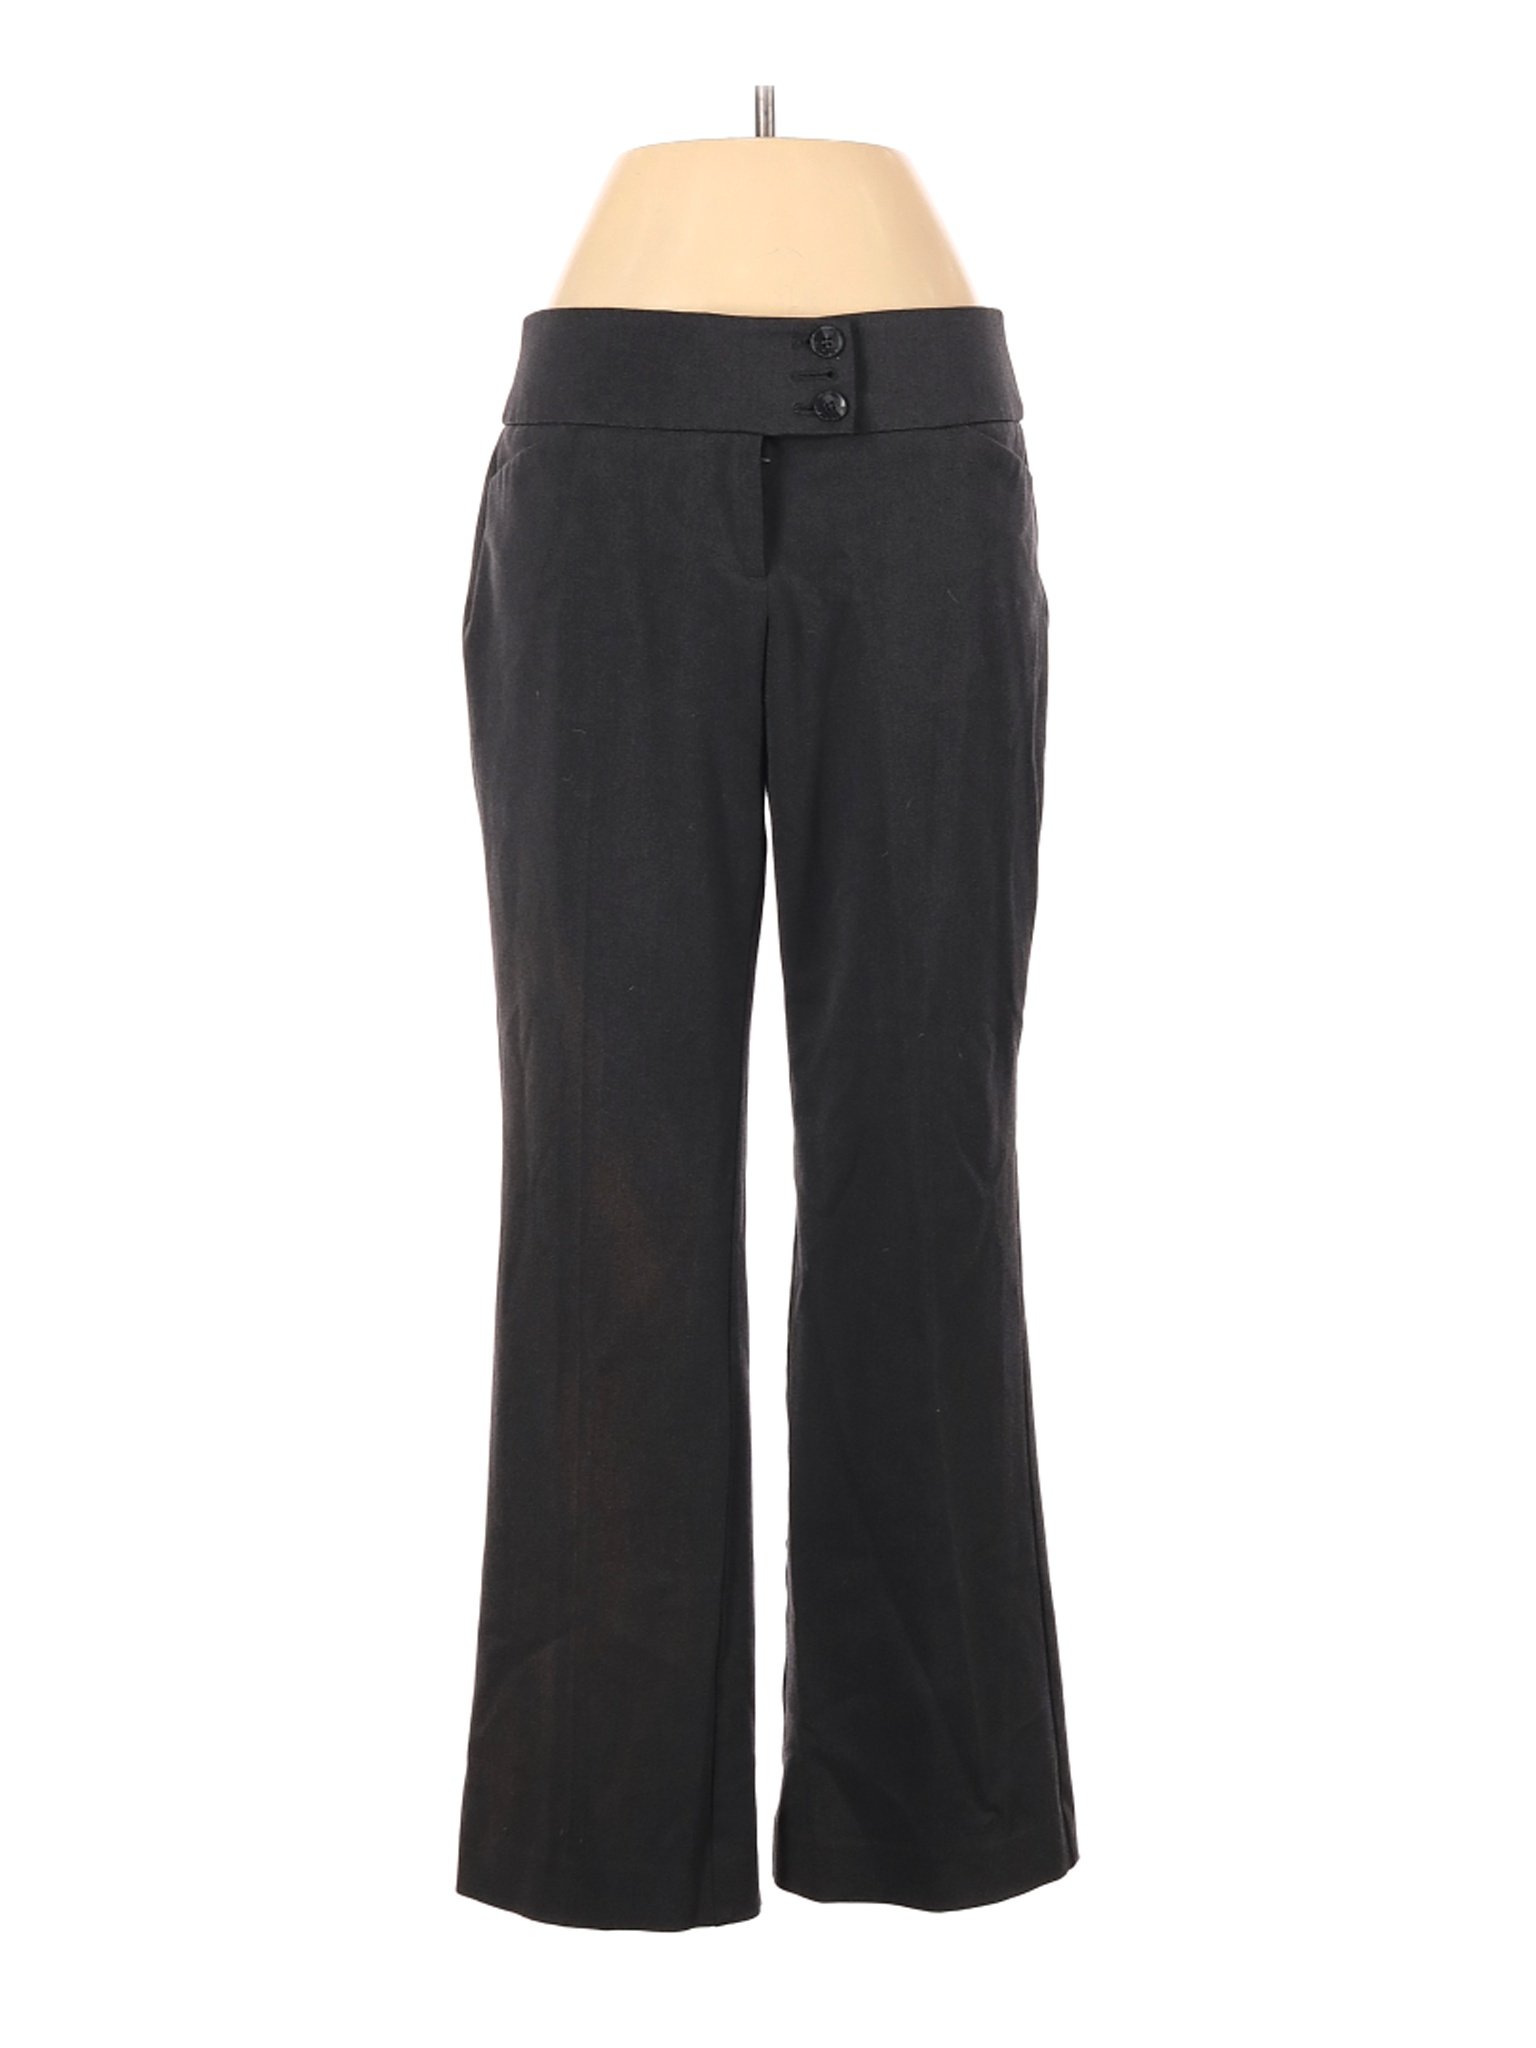 Ann Taylor Women Black Dress Pants 2 Petites | eBay